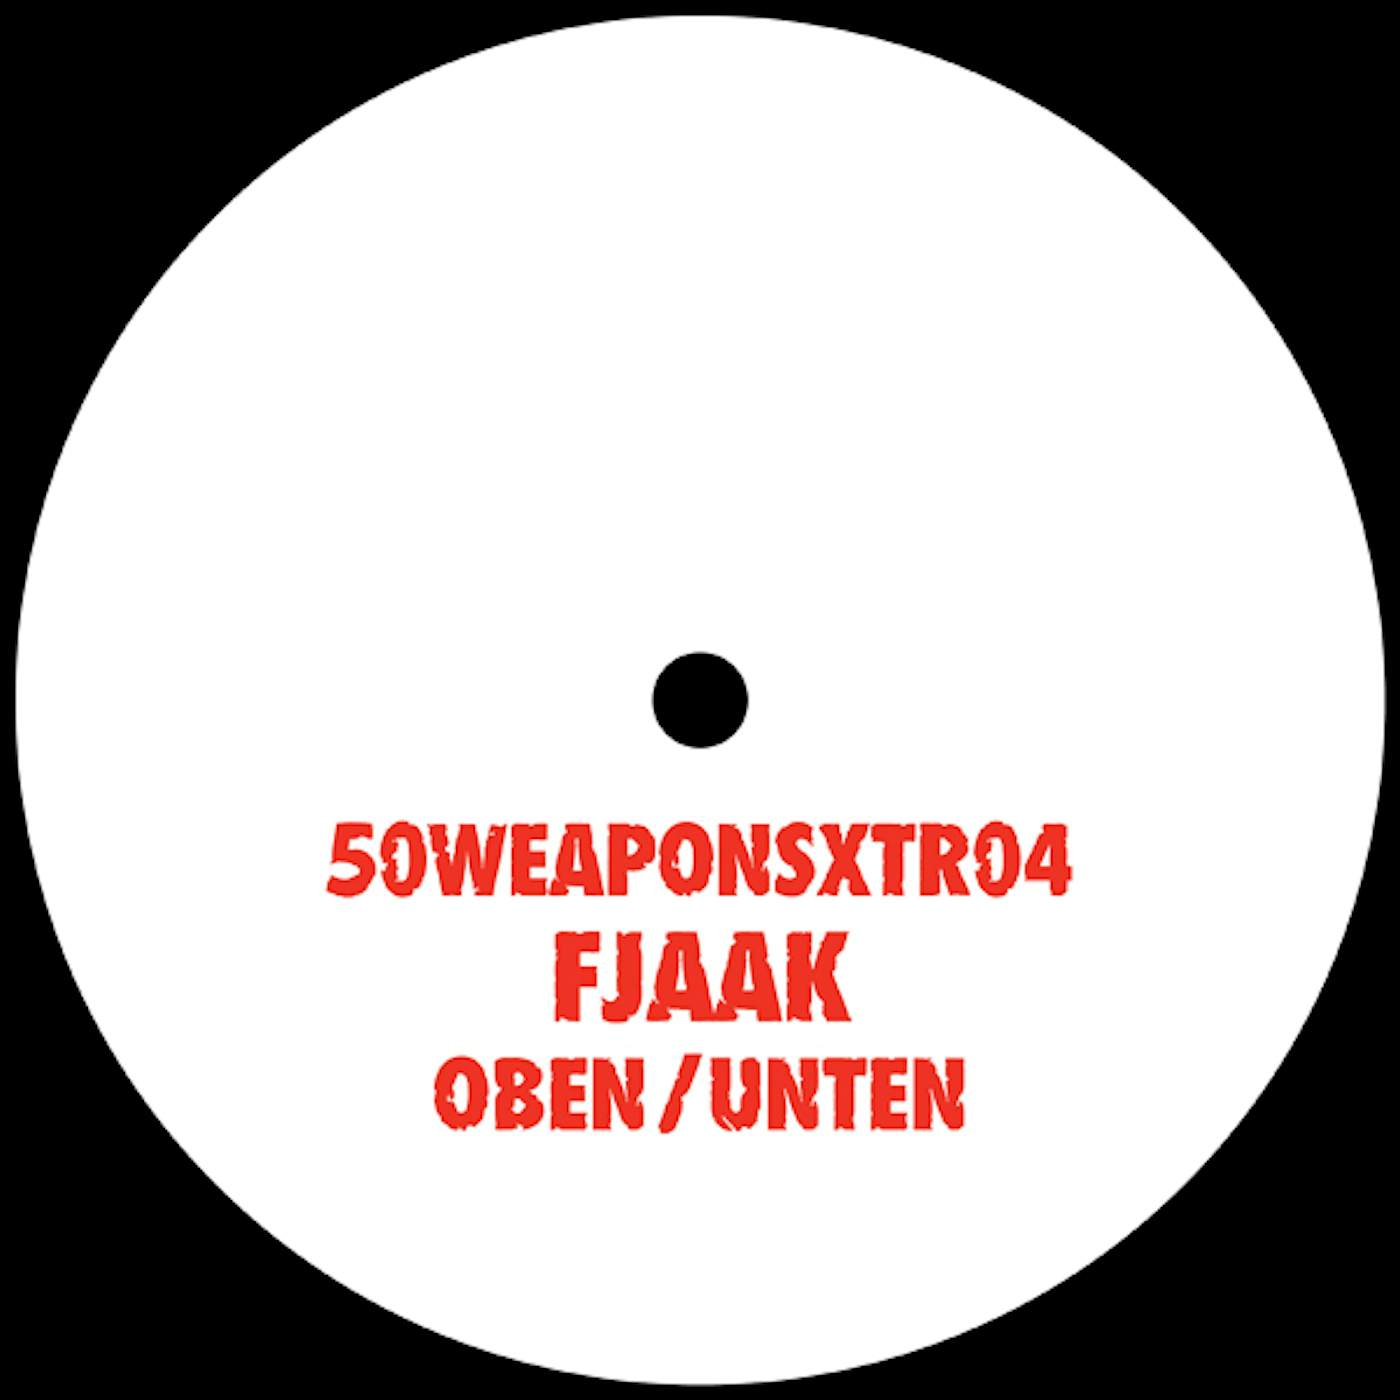 FJAAK Oben / Unten Vinyl Record